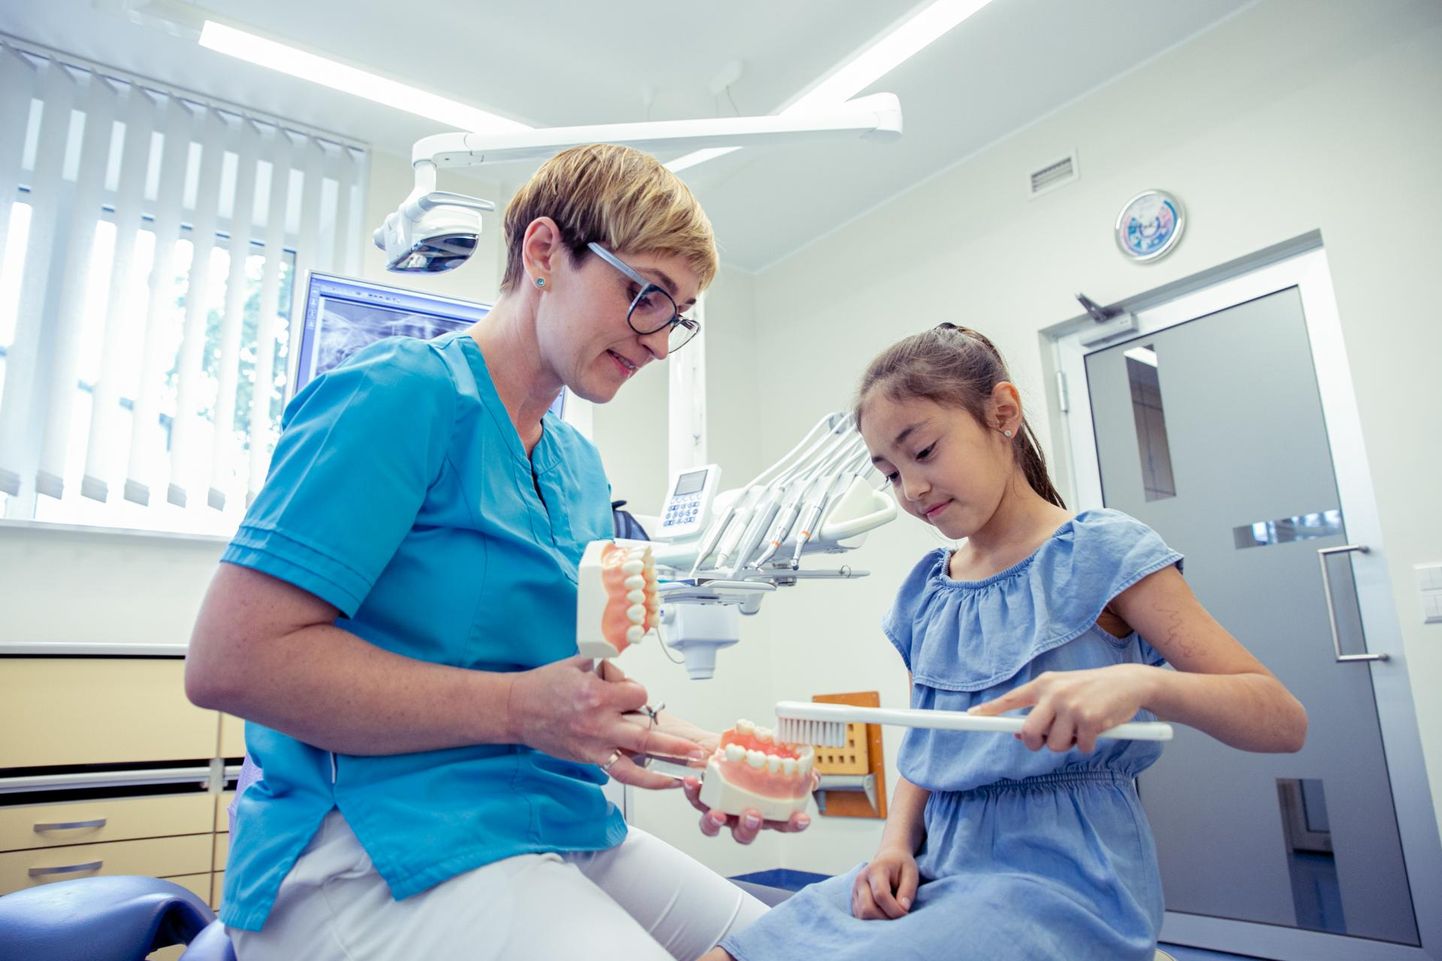 Unimedi kliiniku hambaarst Piret Jänes soovitab lastega hambaarsti juures käia regulaarselt, üldjuhul iga kuue kuu ­tagant.